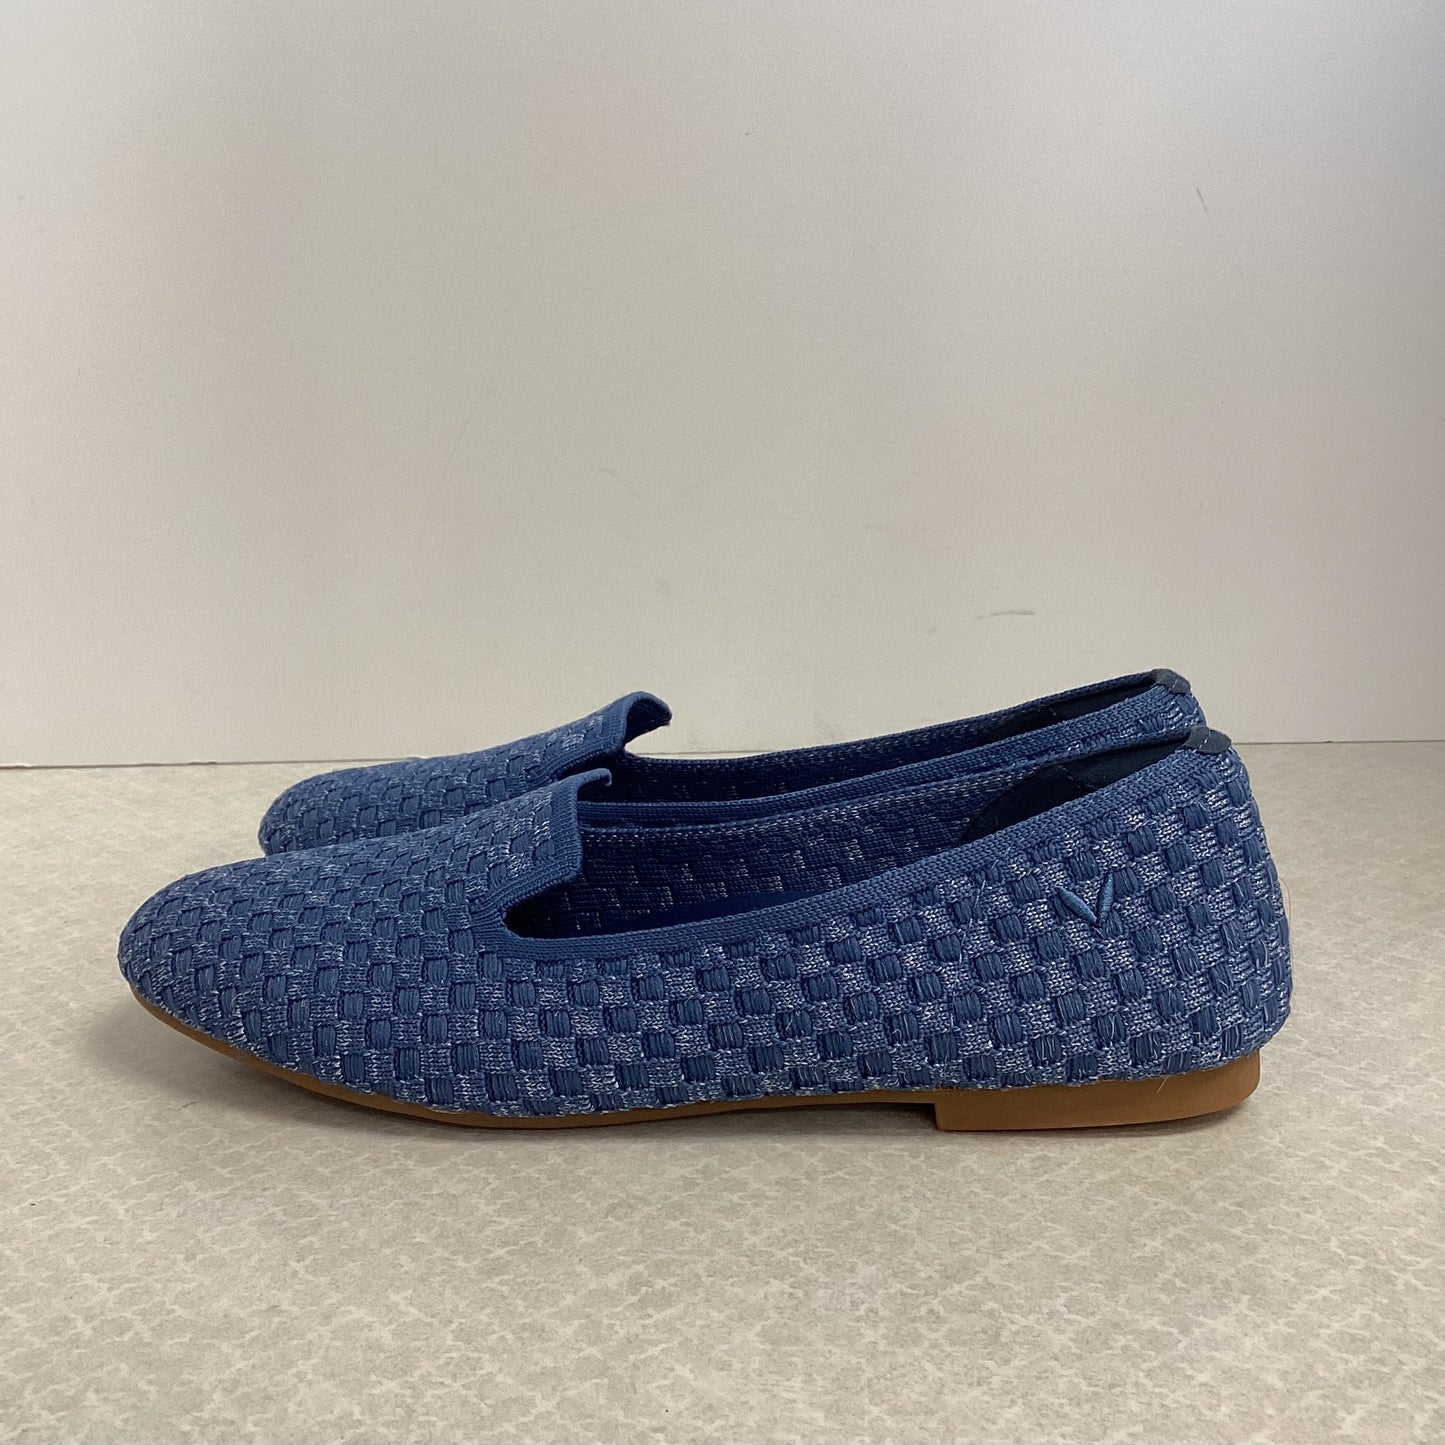 Blue Shoes Flats VIVAIA, Size 6.5